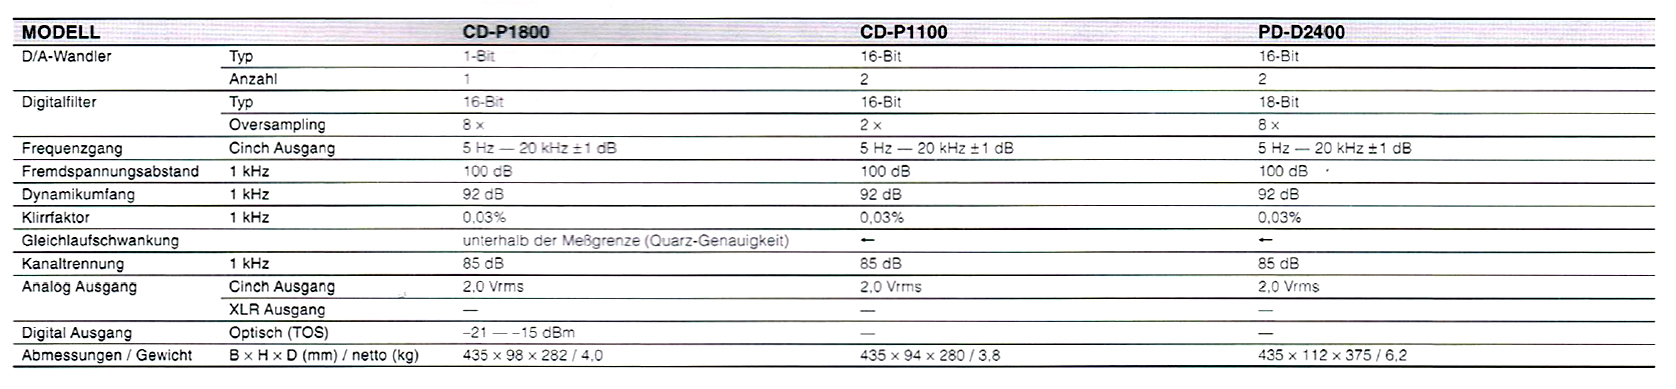 Teac PD-D 2400-Daten-1998.jpg